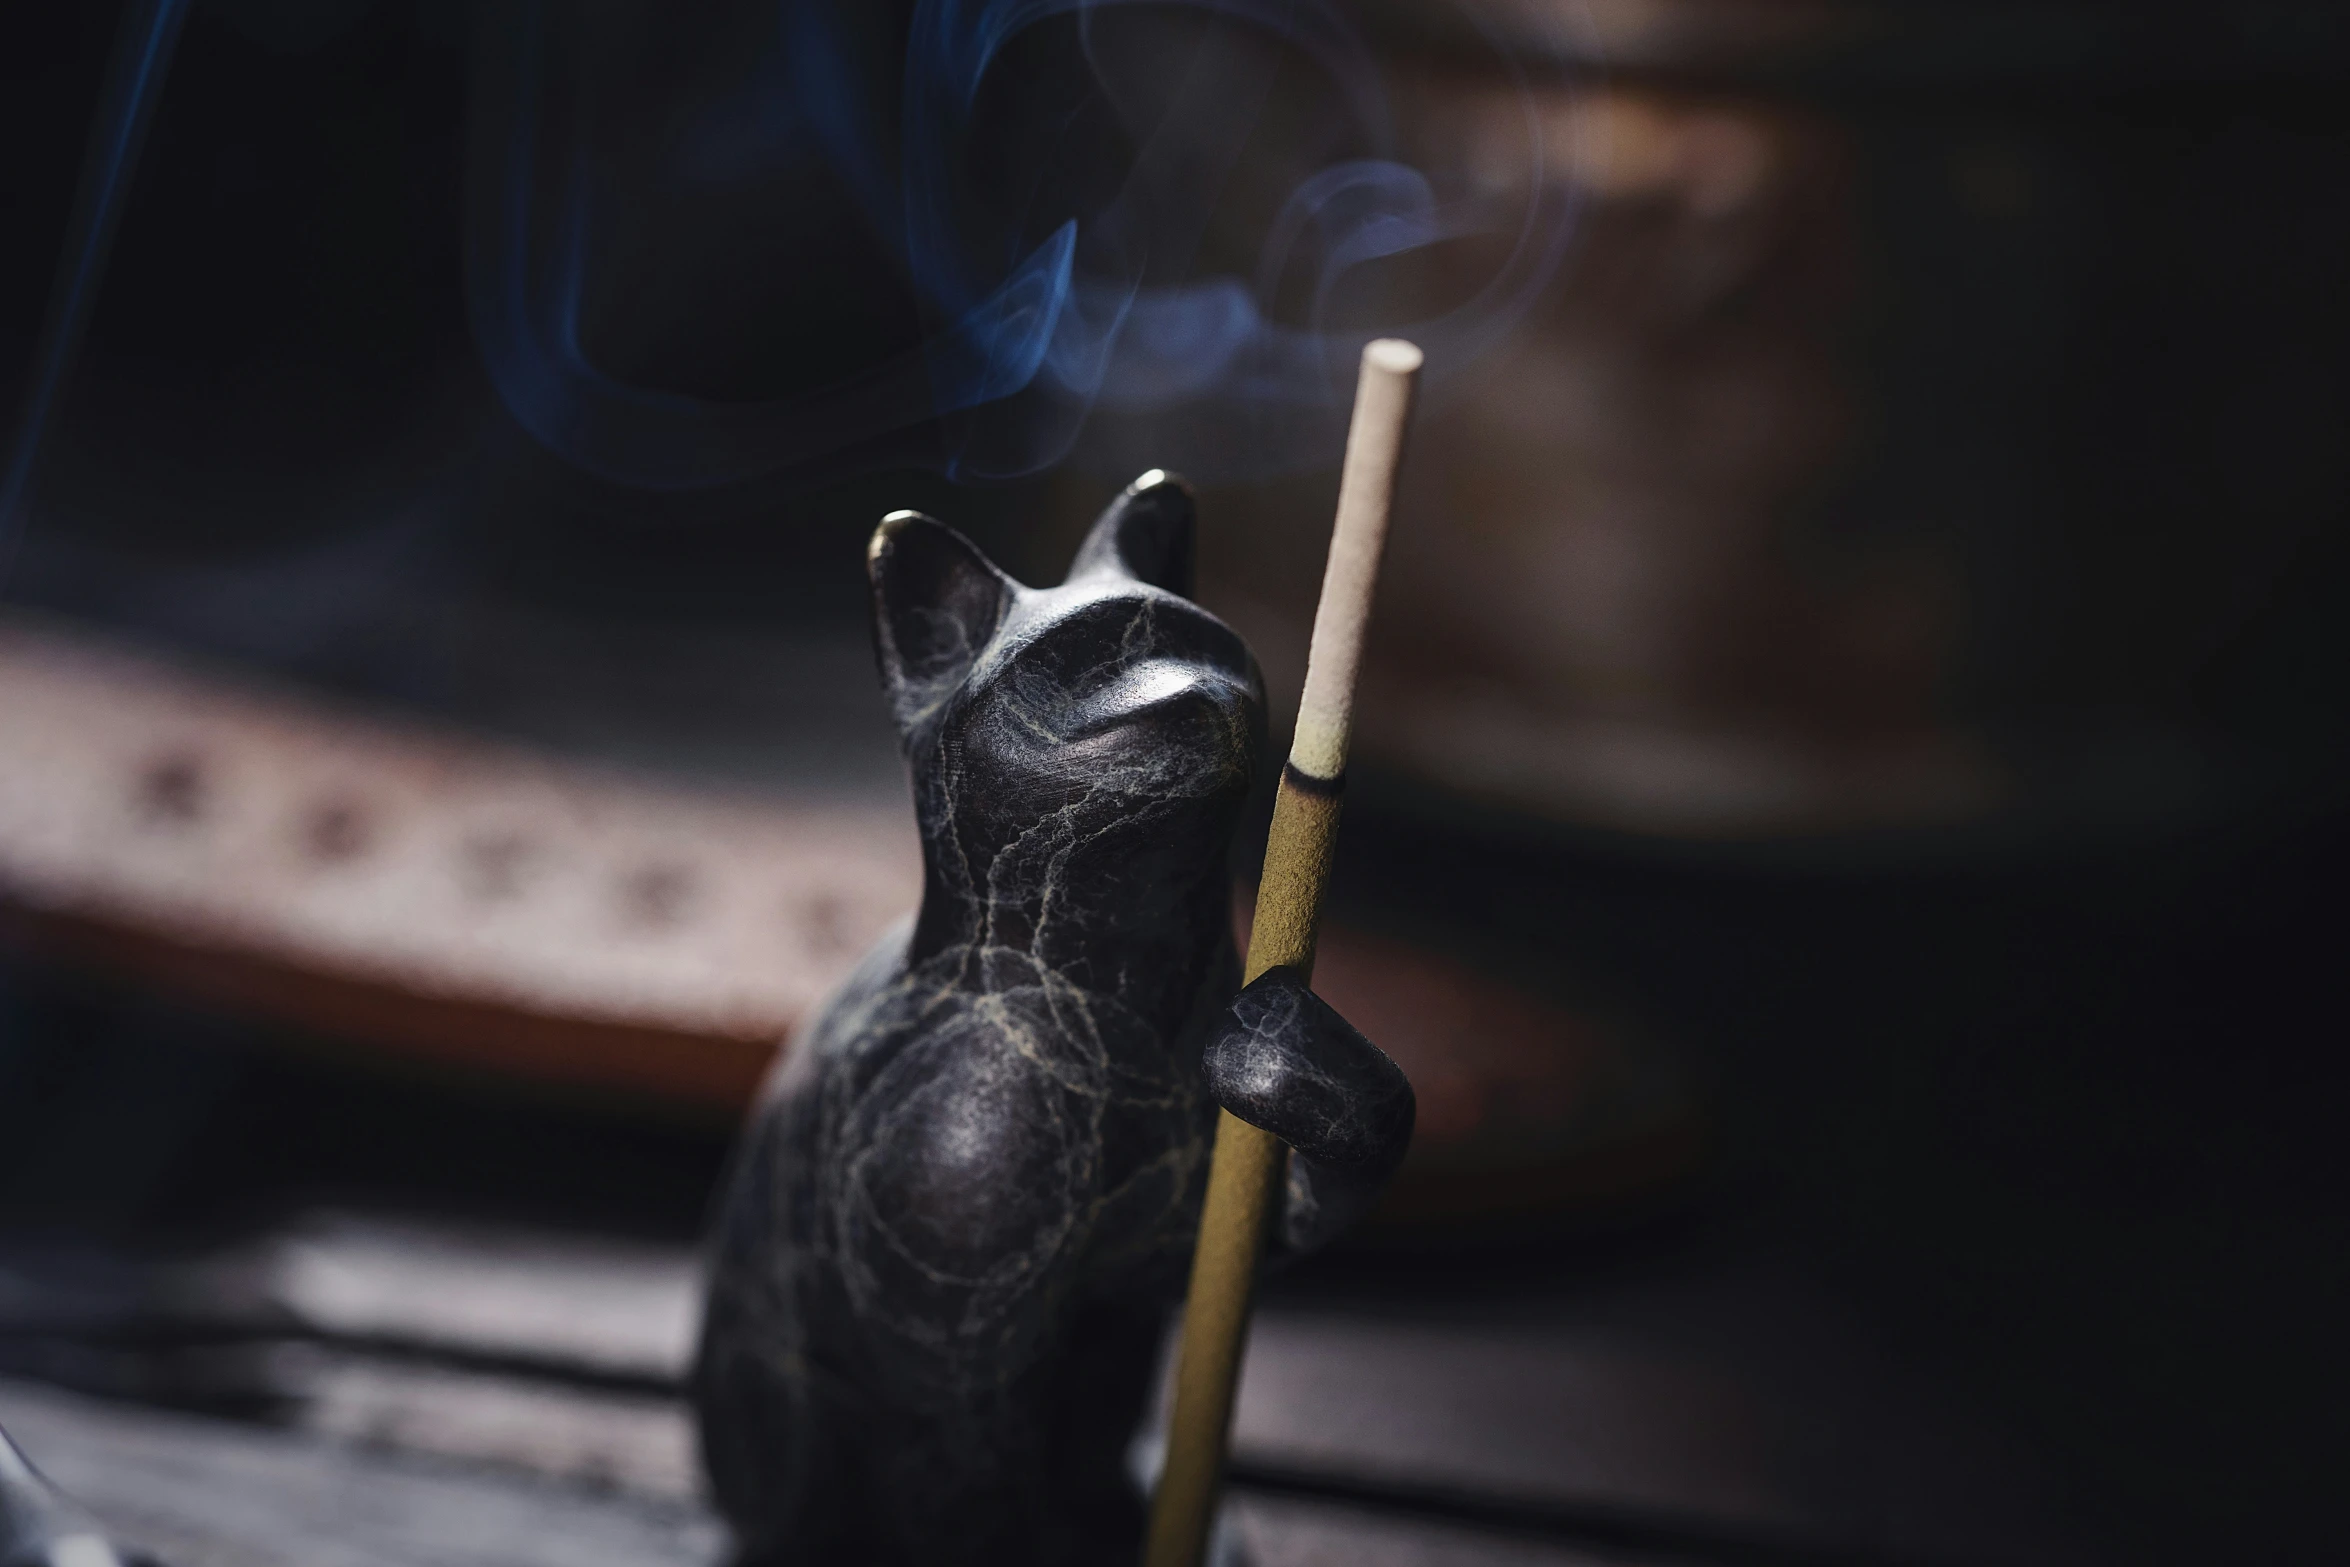 a cat statue holding a lit cigarette